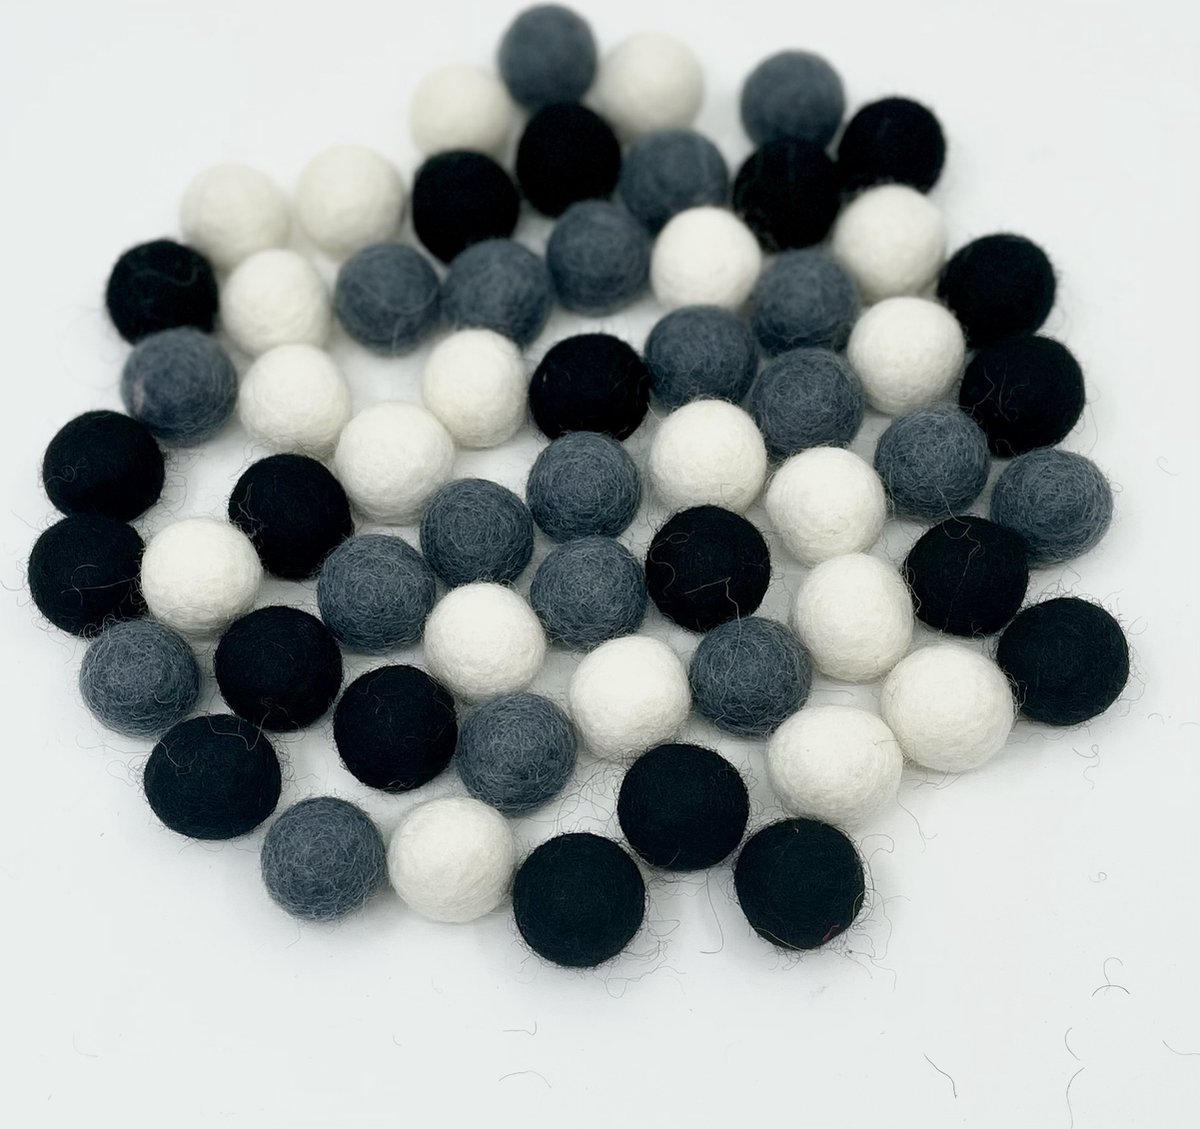 MooiVilt - viltballetjes - 70 stuks - kleurenmix - zwart - wit - donkergrijs - 2,2cm - hobby - wolvilt - handwerk - creatief - Fairtrade